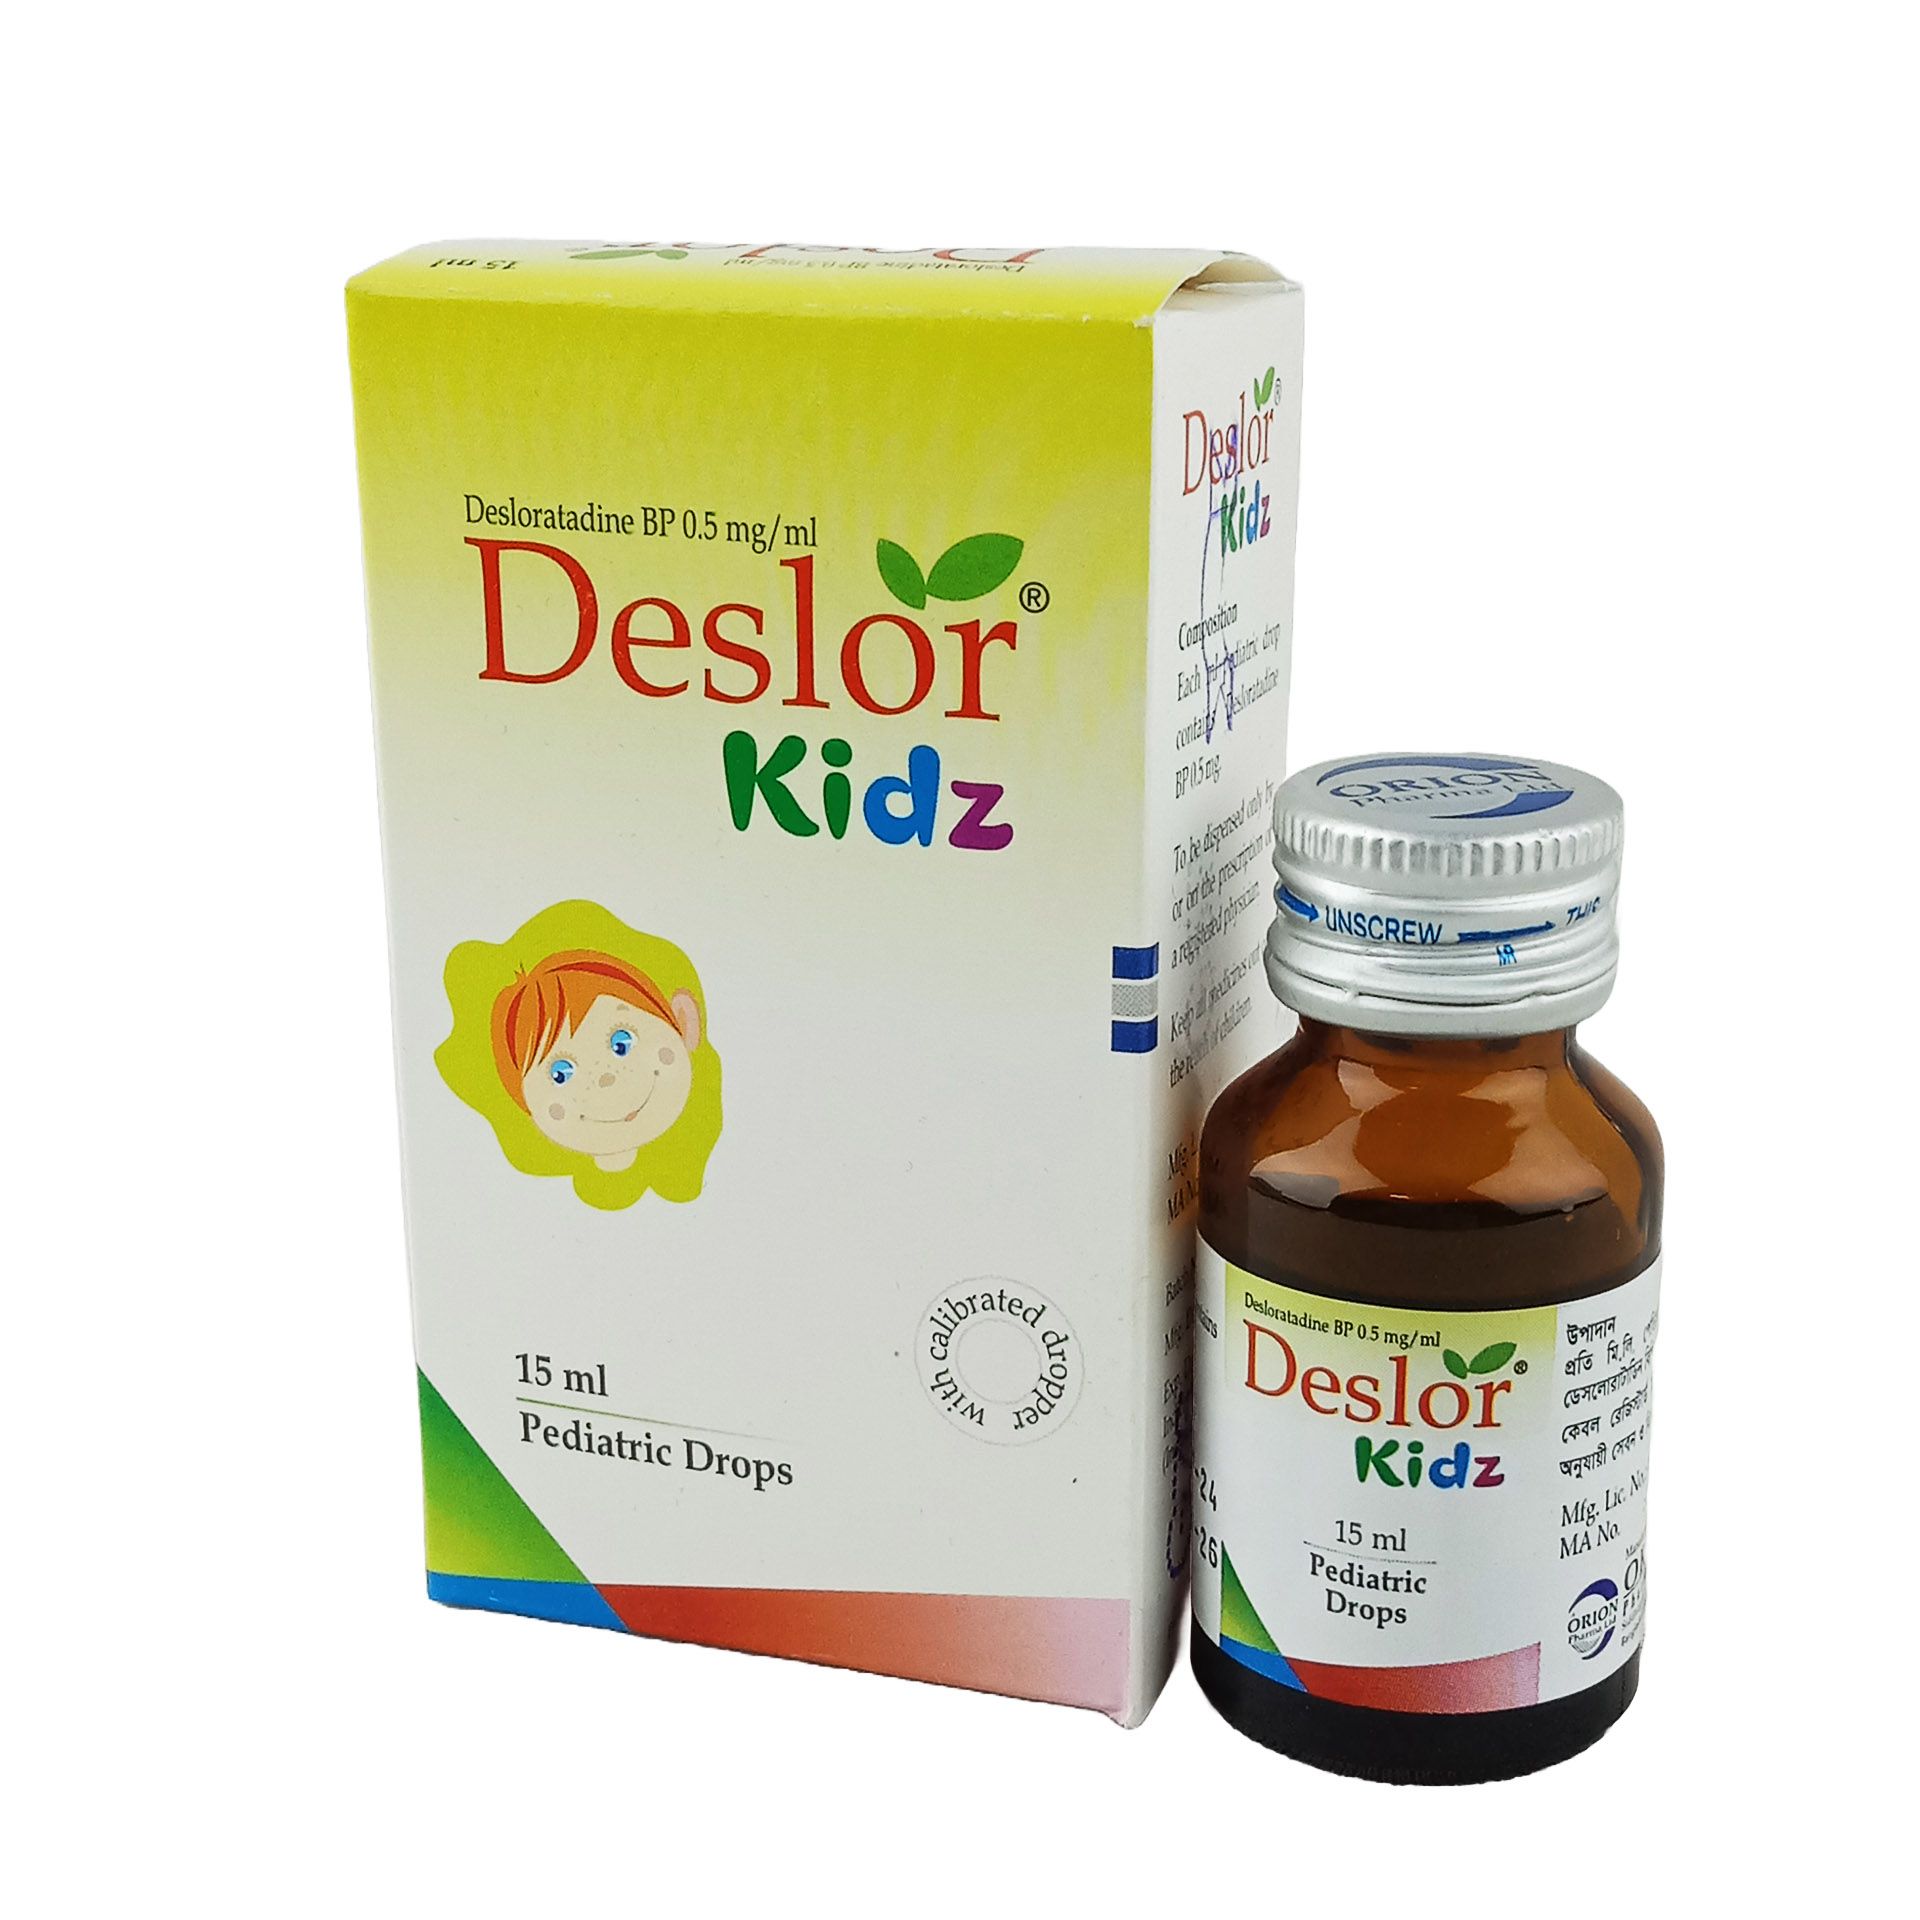 Deslor Kidz 0.5mg/ml Pediatric Drops